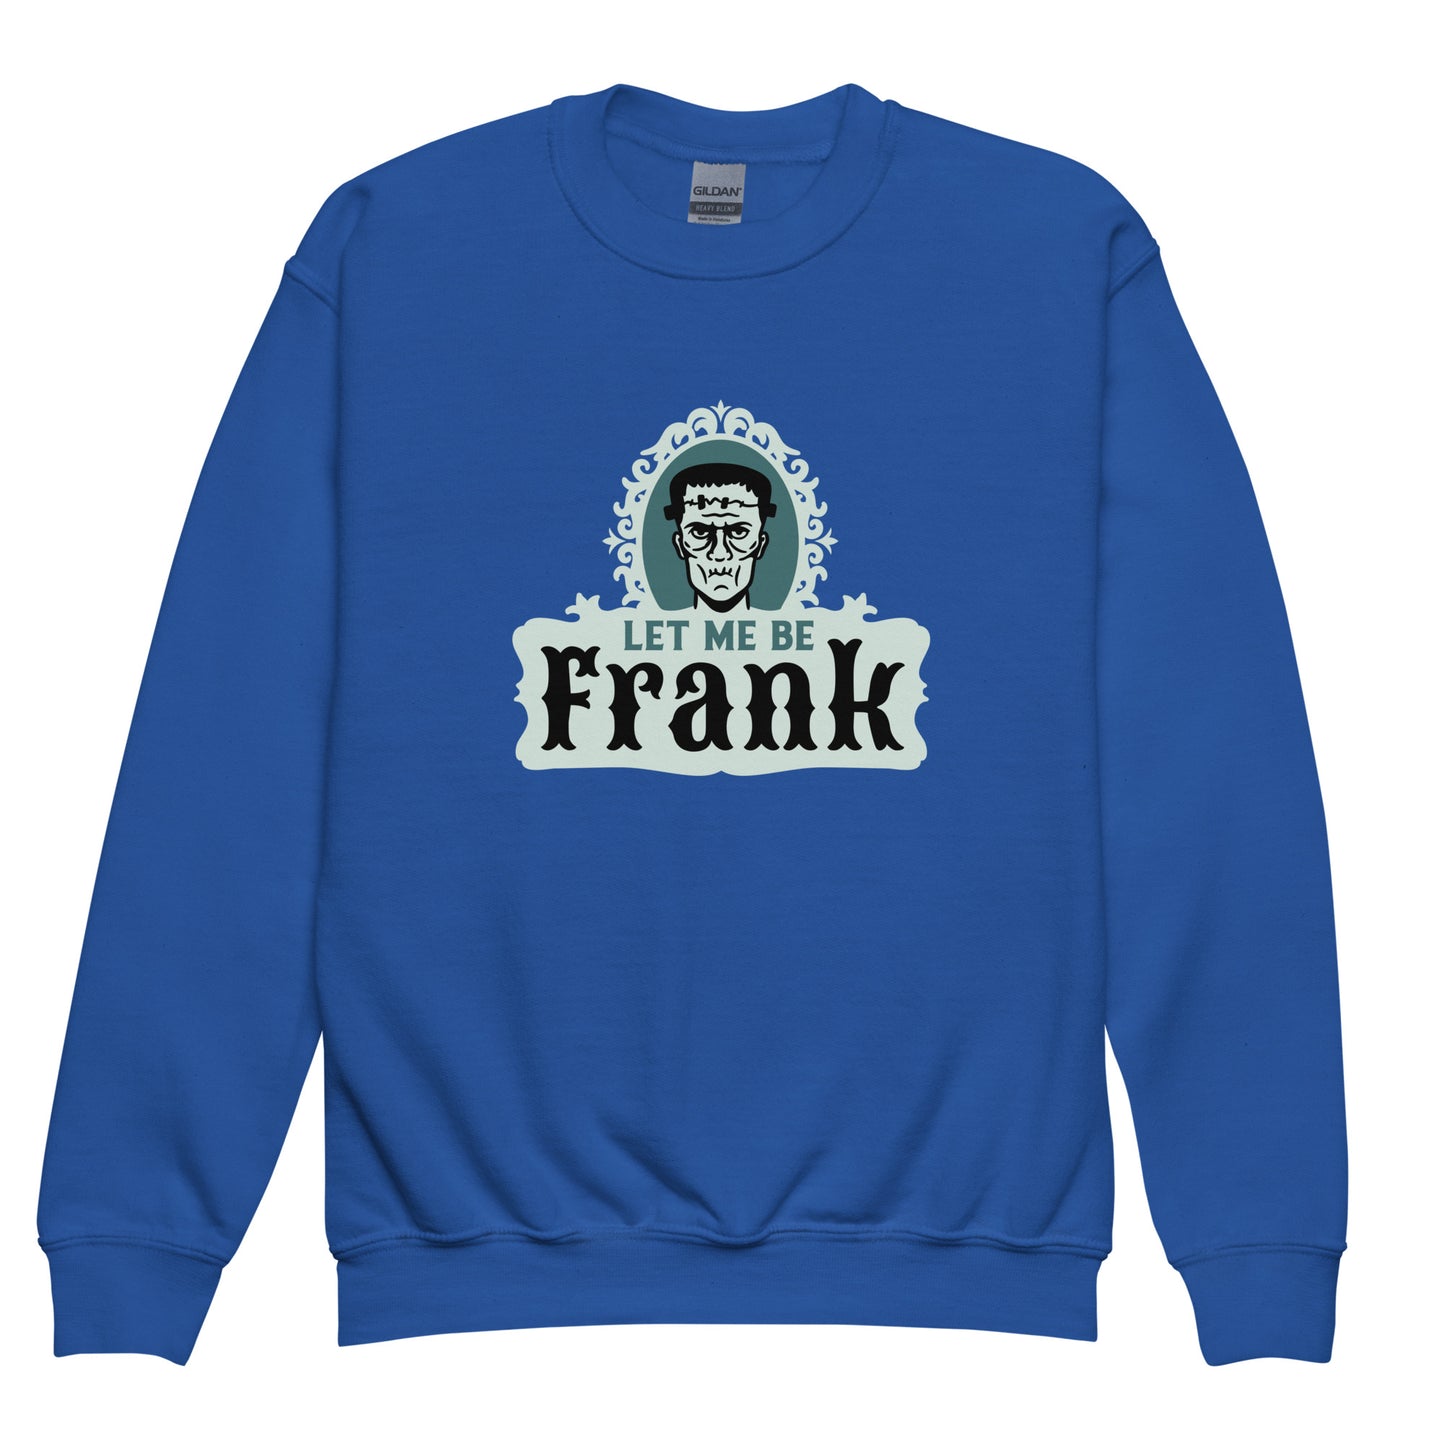 "Frank" children's hooded sweatshirt